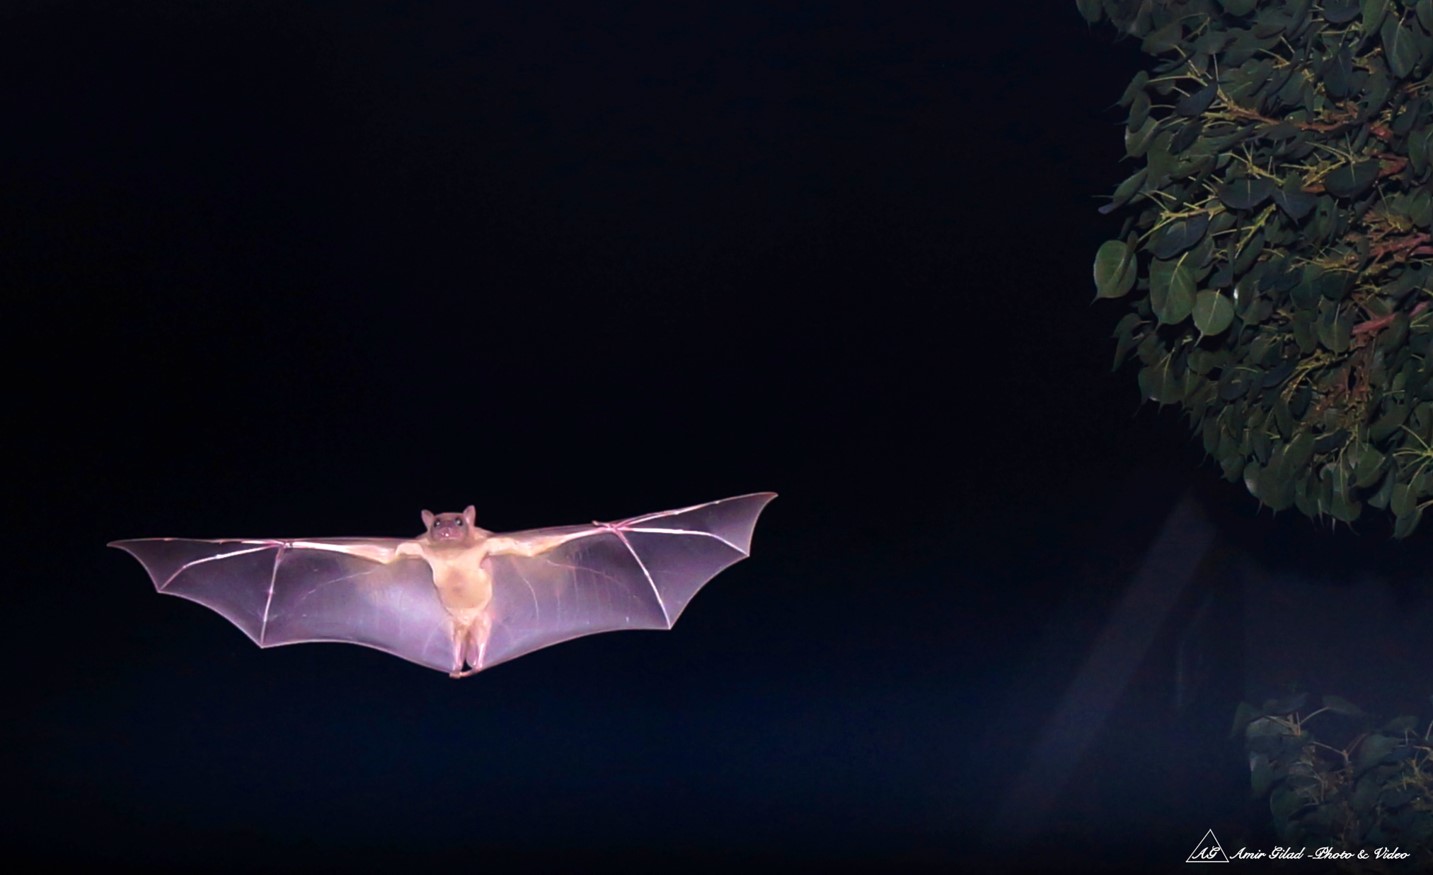 A Bat at Night